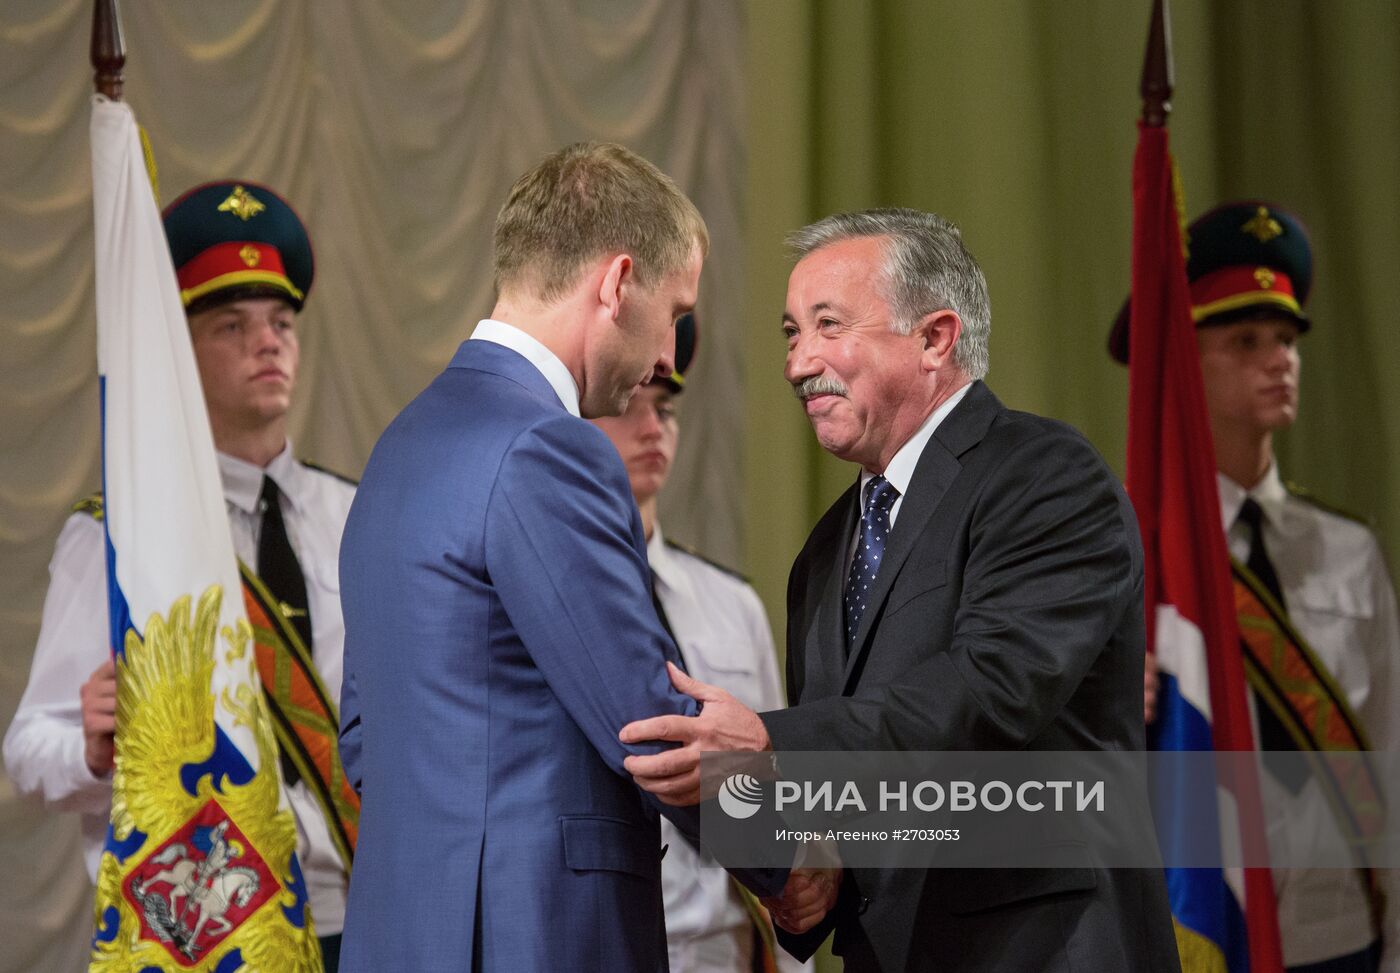 Инаугурация избранного губернатора Амурской области Козлова прошла в Благовещенске